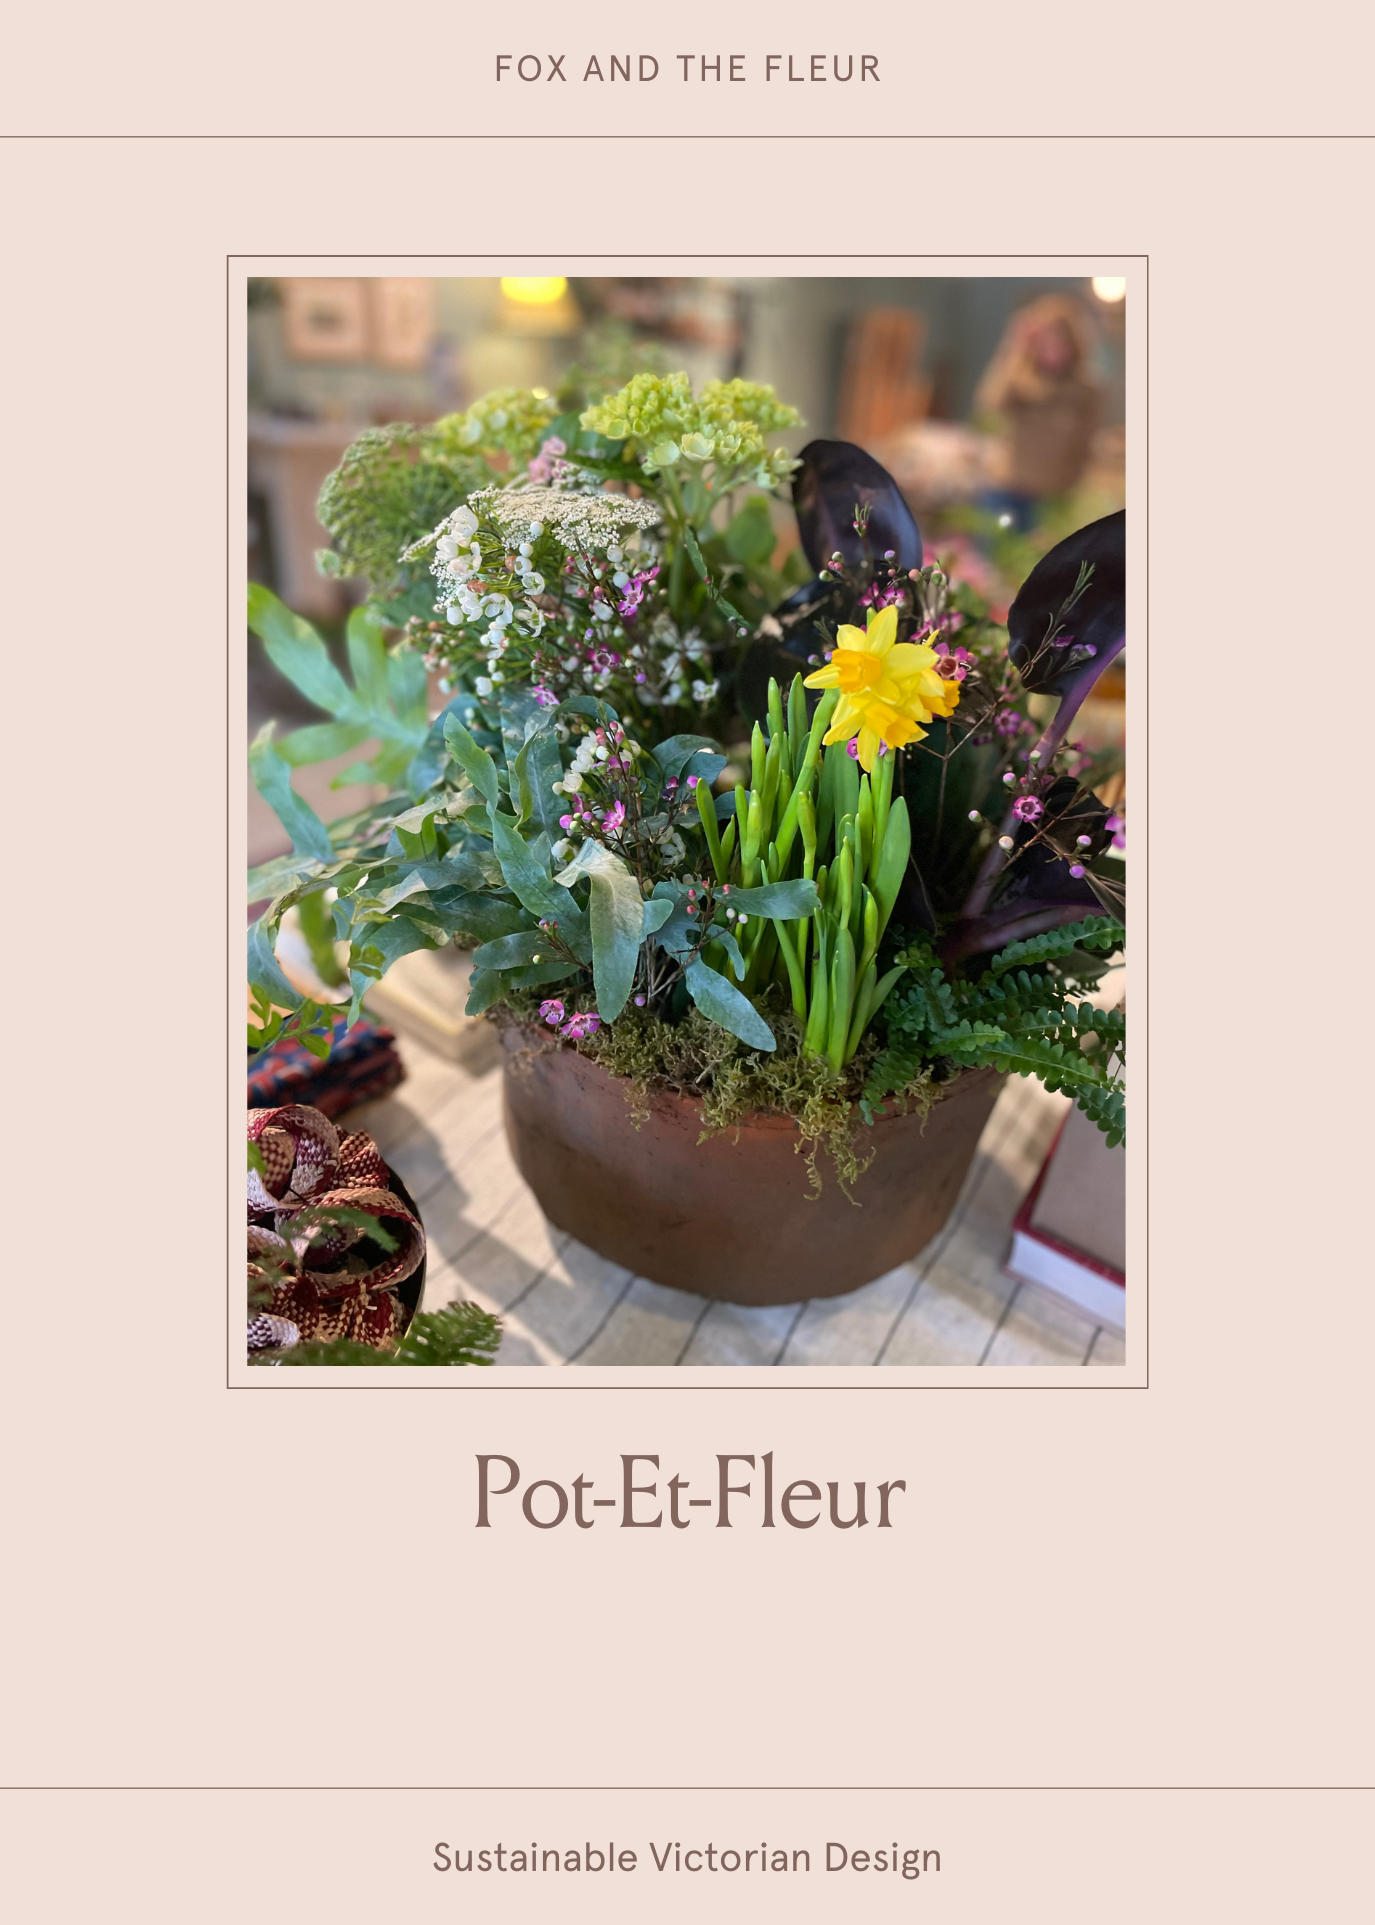 Pot-et-fleur Design